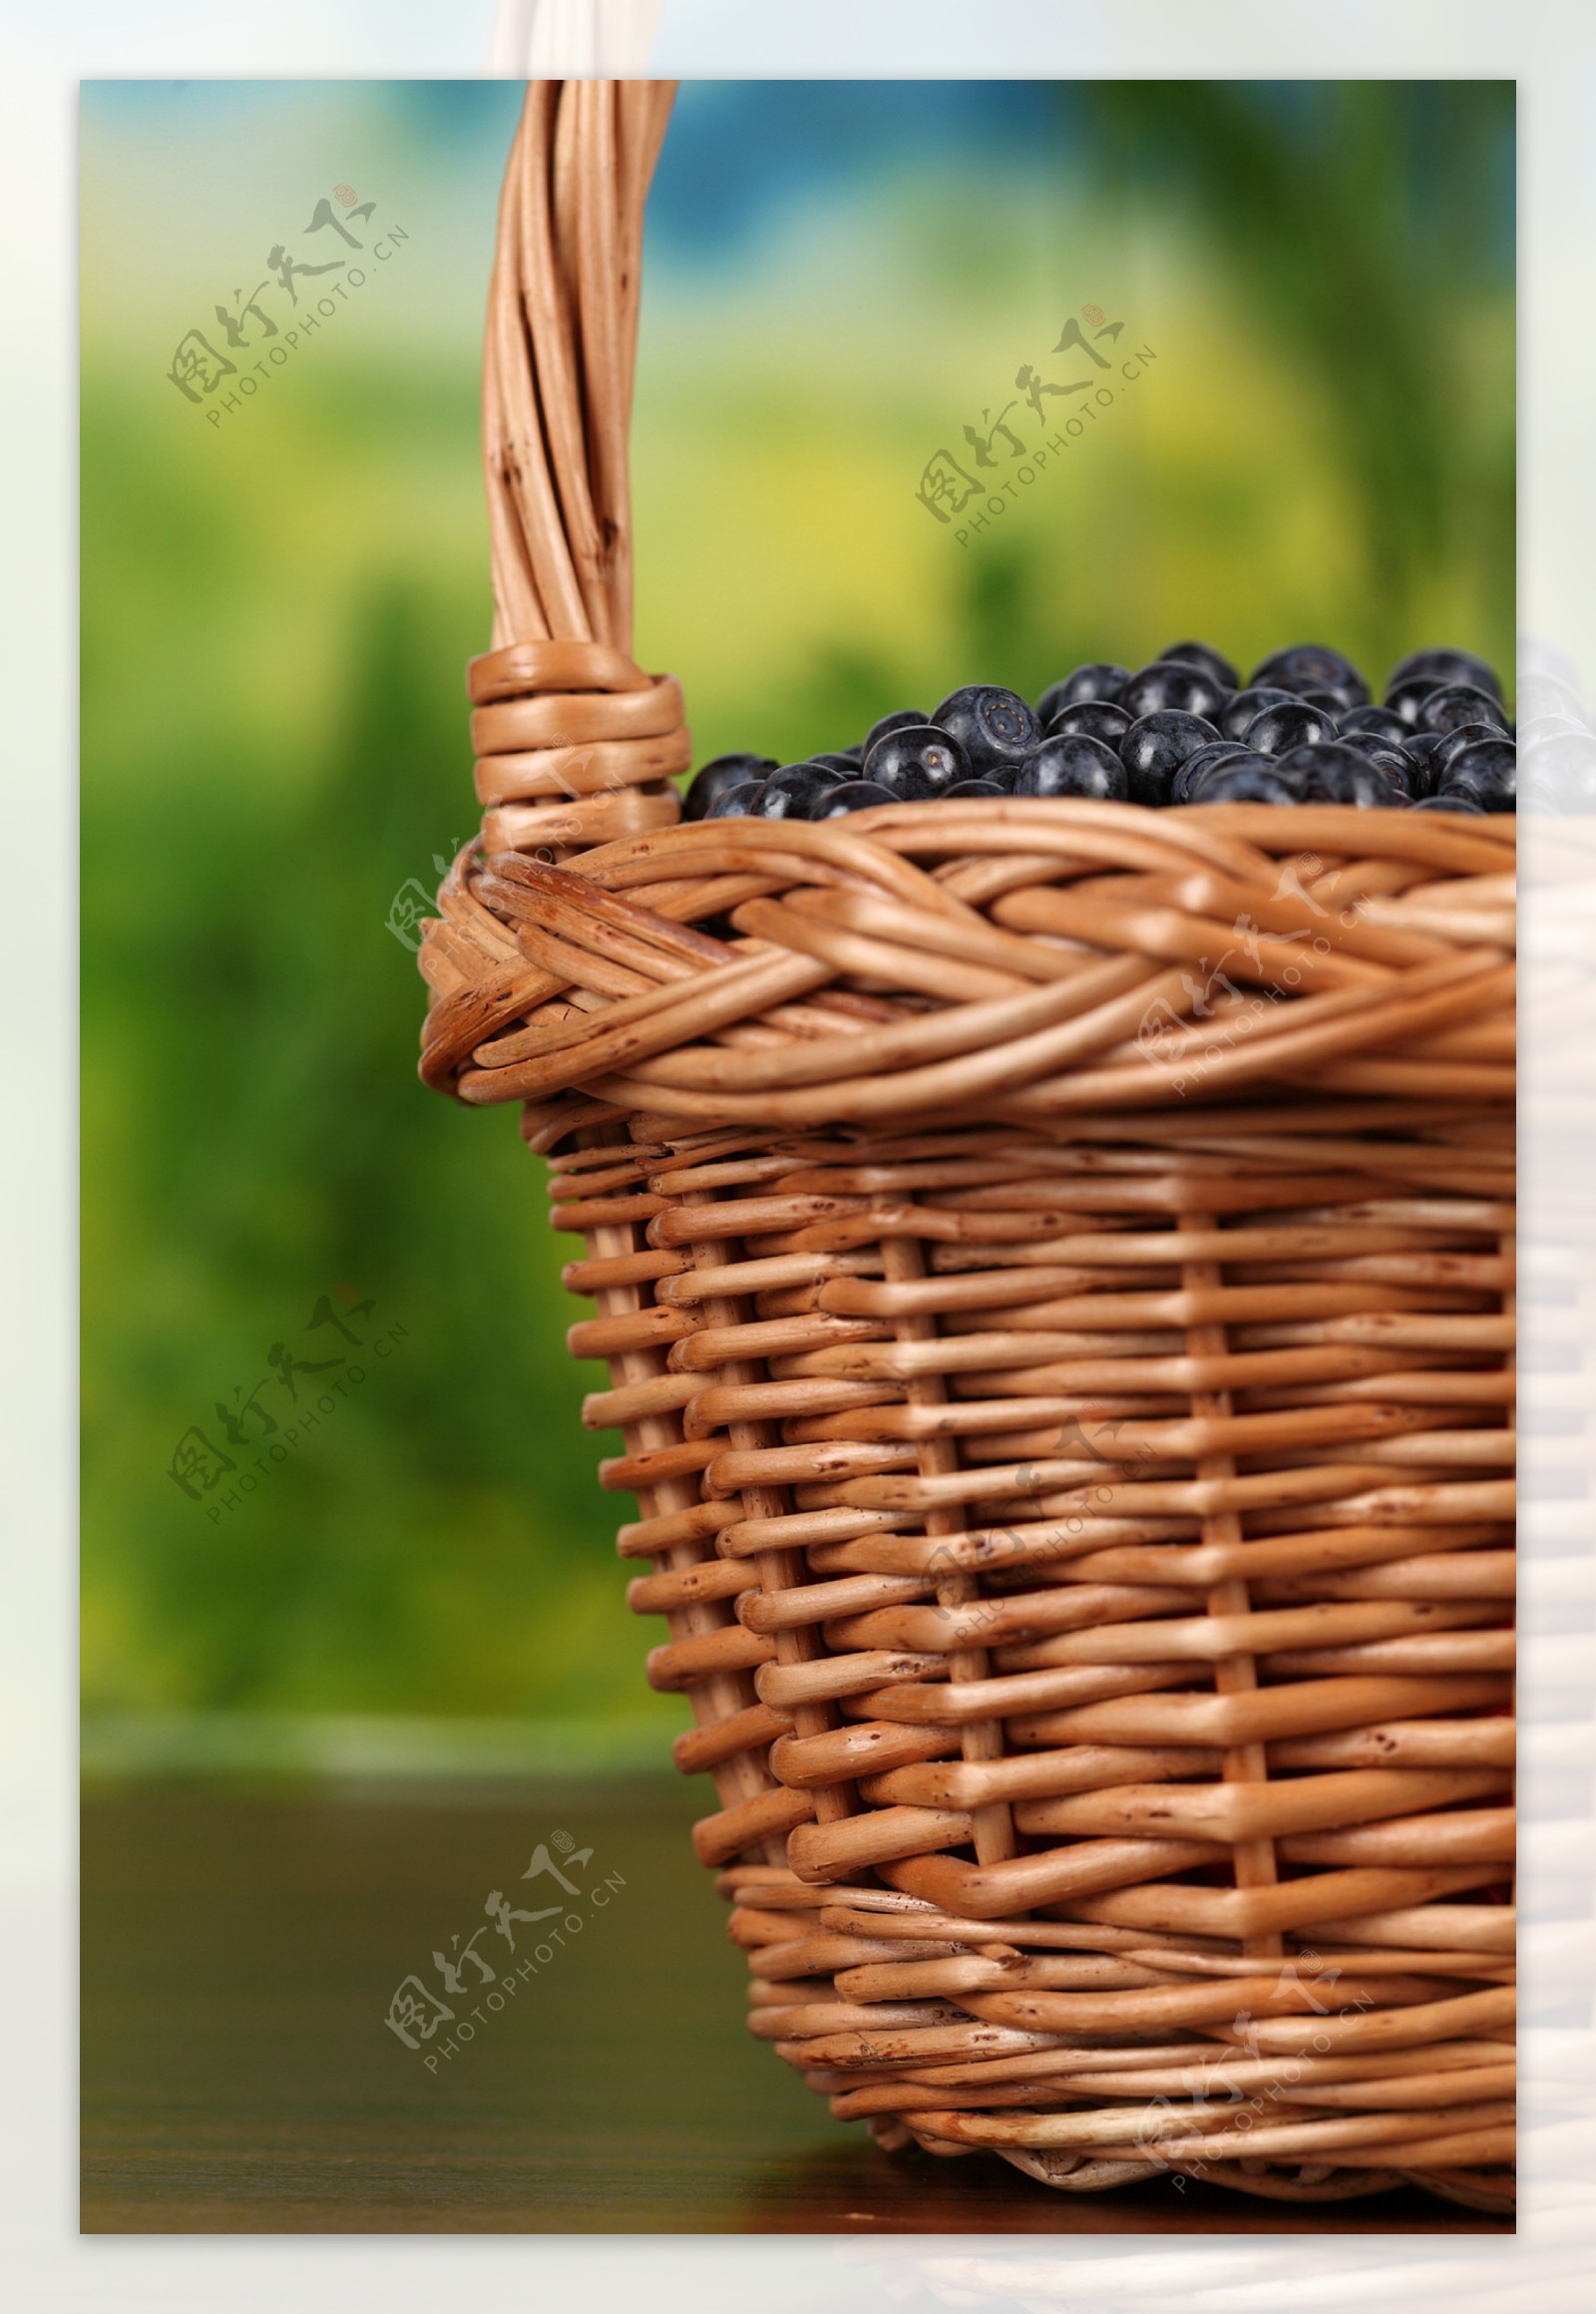 一篮子的蓝莓图片